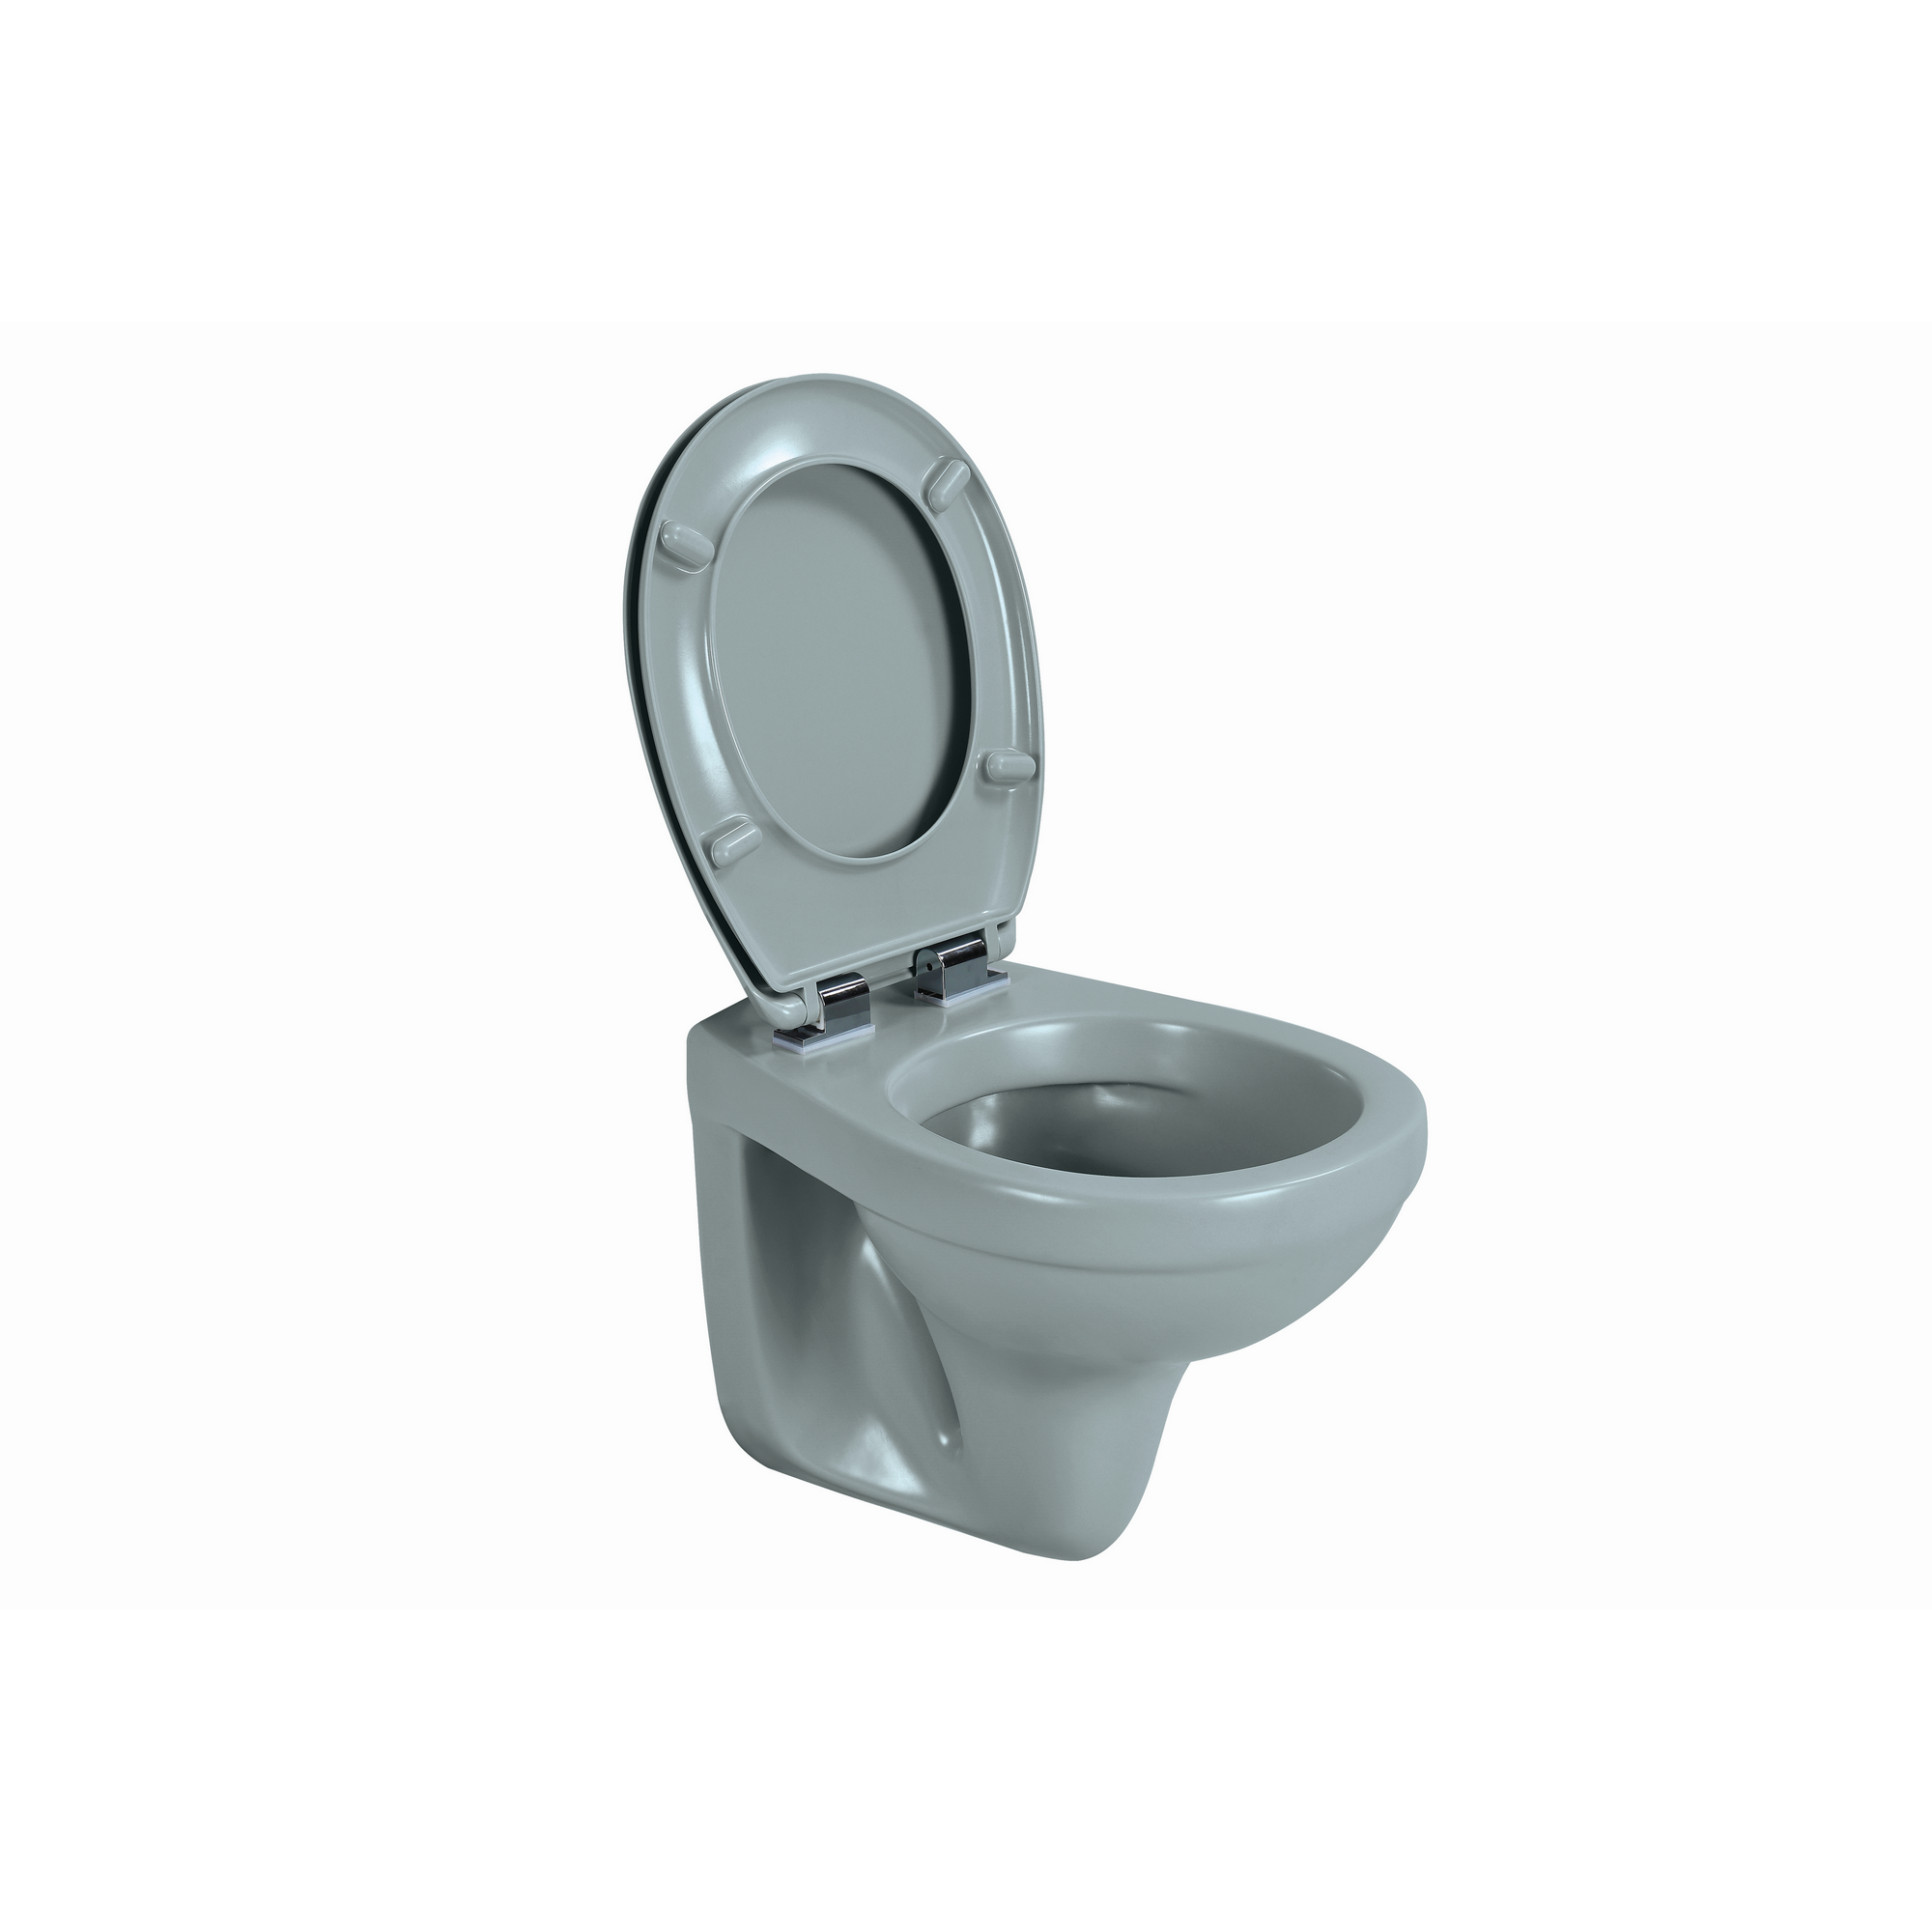 Wand-WC Tiefspüler spülrandlos matt grau, ohne WC-Sitz + product picture